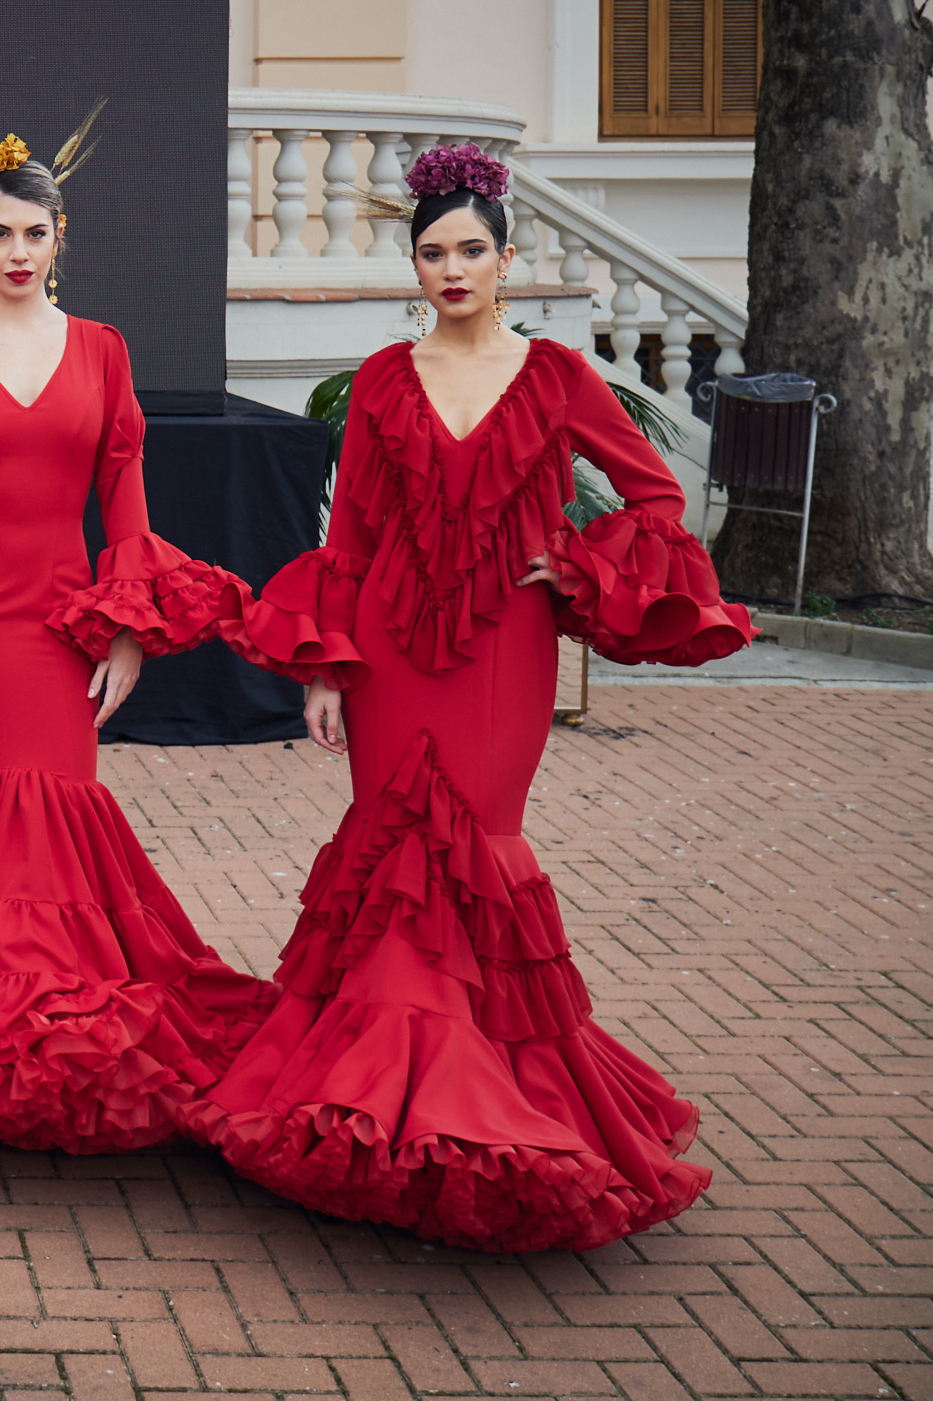 sobre apuntalar A nueve Vestido flamenca rojo volantes en gasa – Hita y Arcos 2023 cita previa  685531861